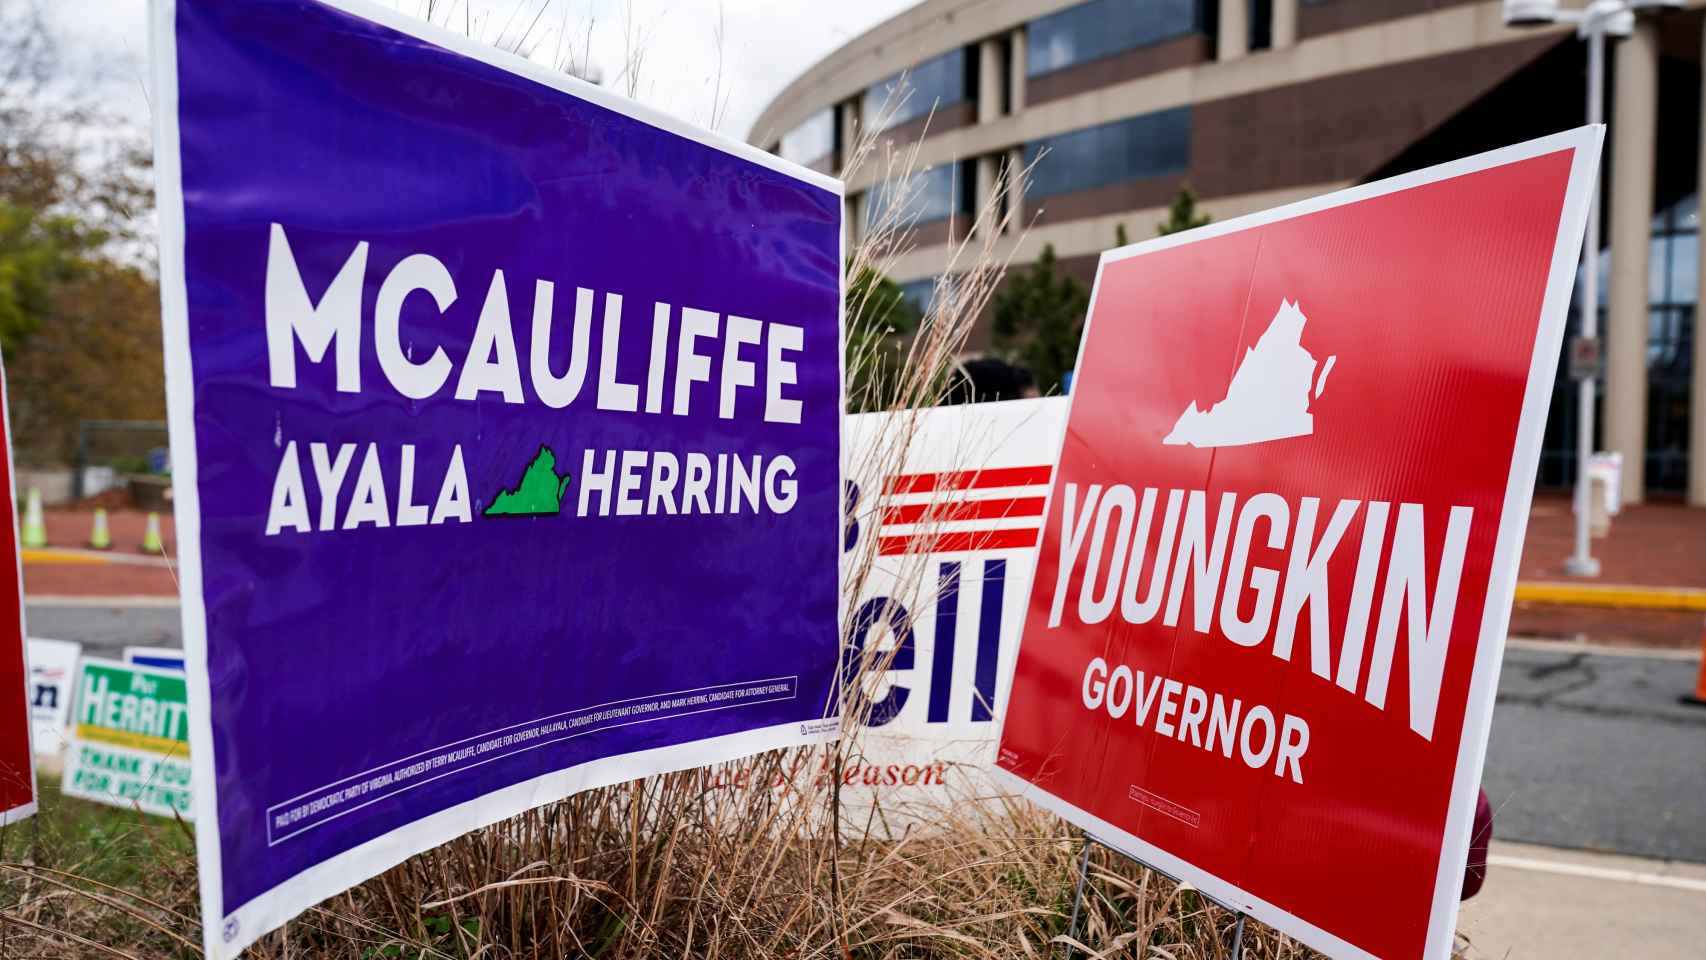 Carteles electorales a favor de uno y otro candidato en Fairfax, Virginia.